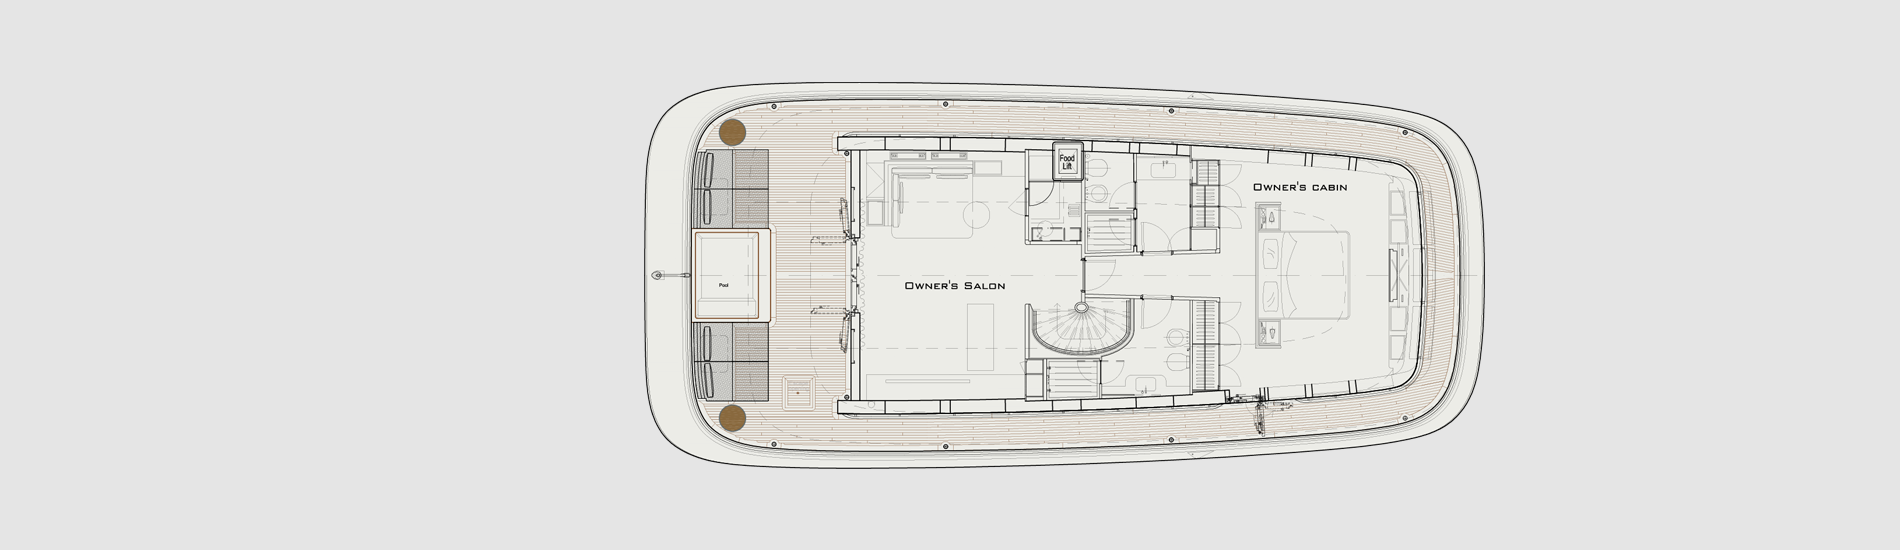 140 foot explorer yacht audace